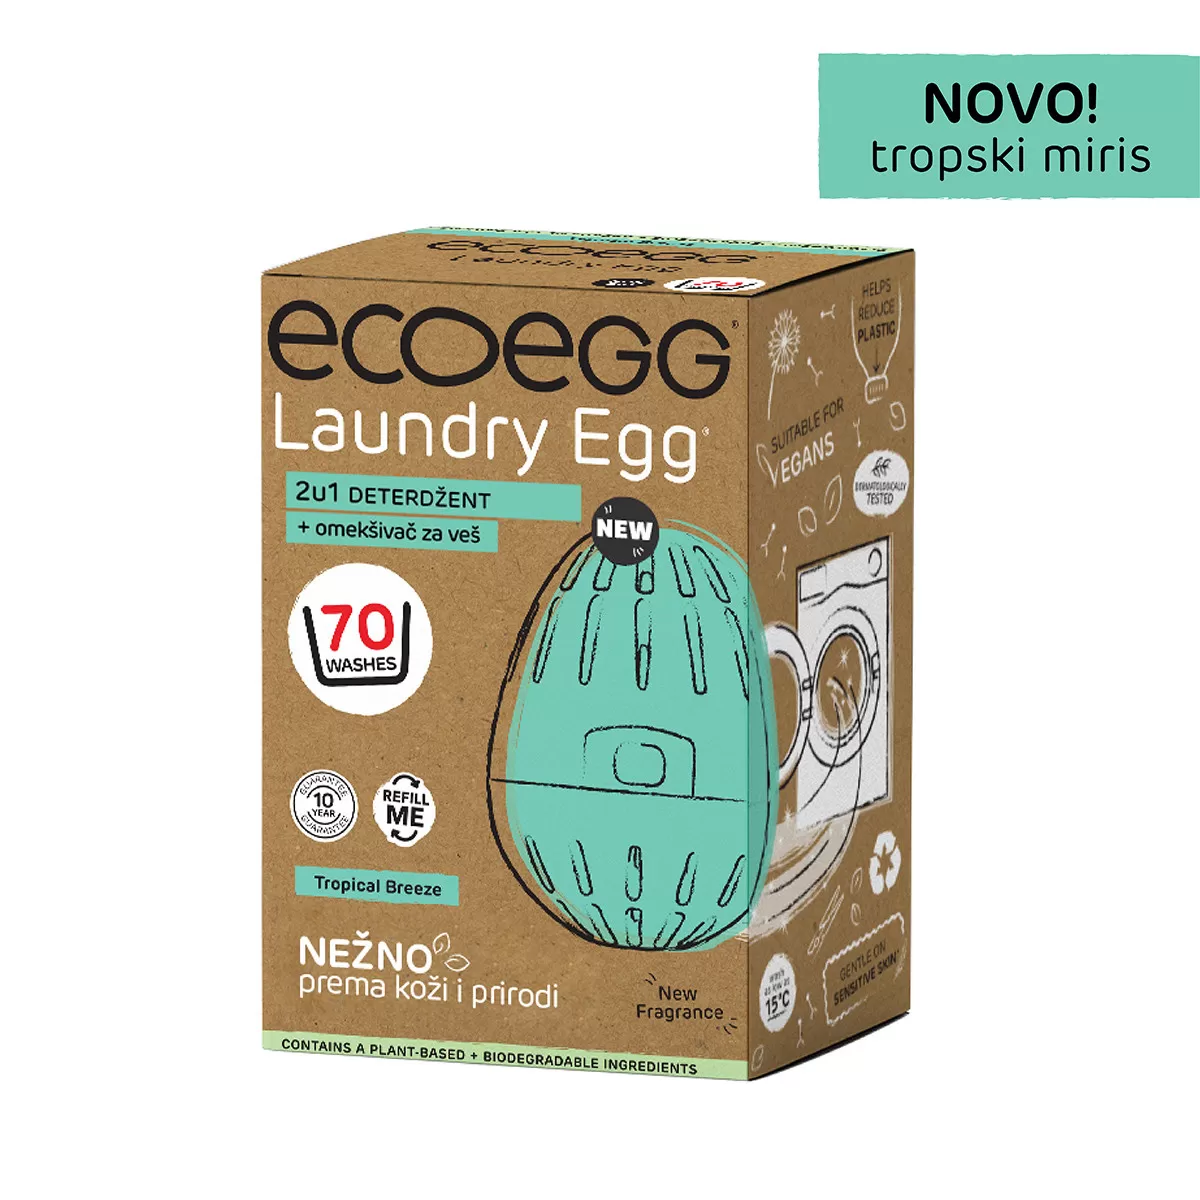 ECOEGG 2u1 deterdžent i omekšivač za veš, Tropski miris-70 pranja 